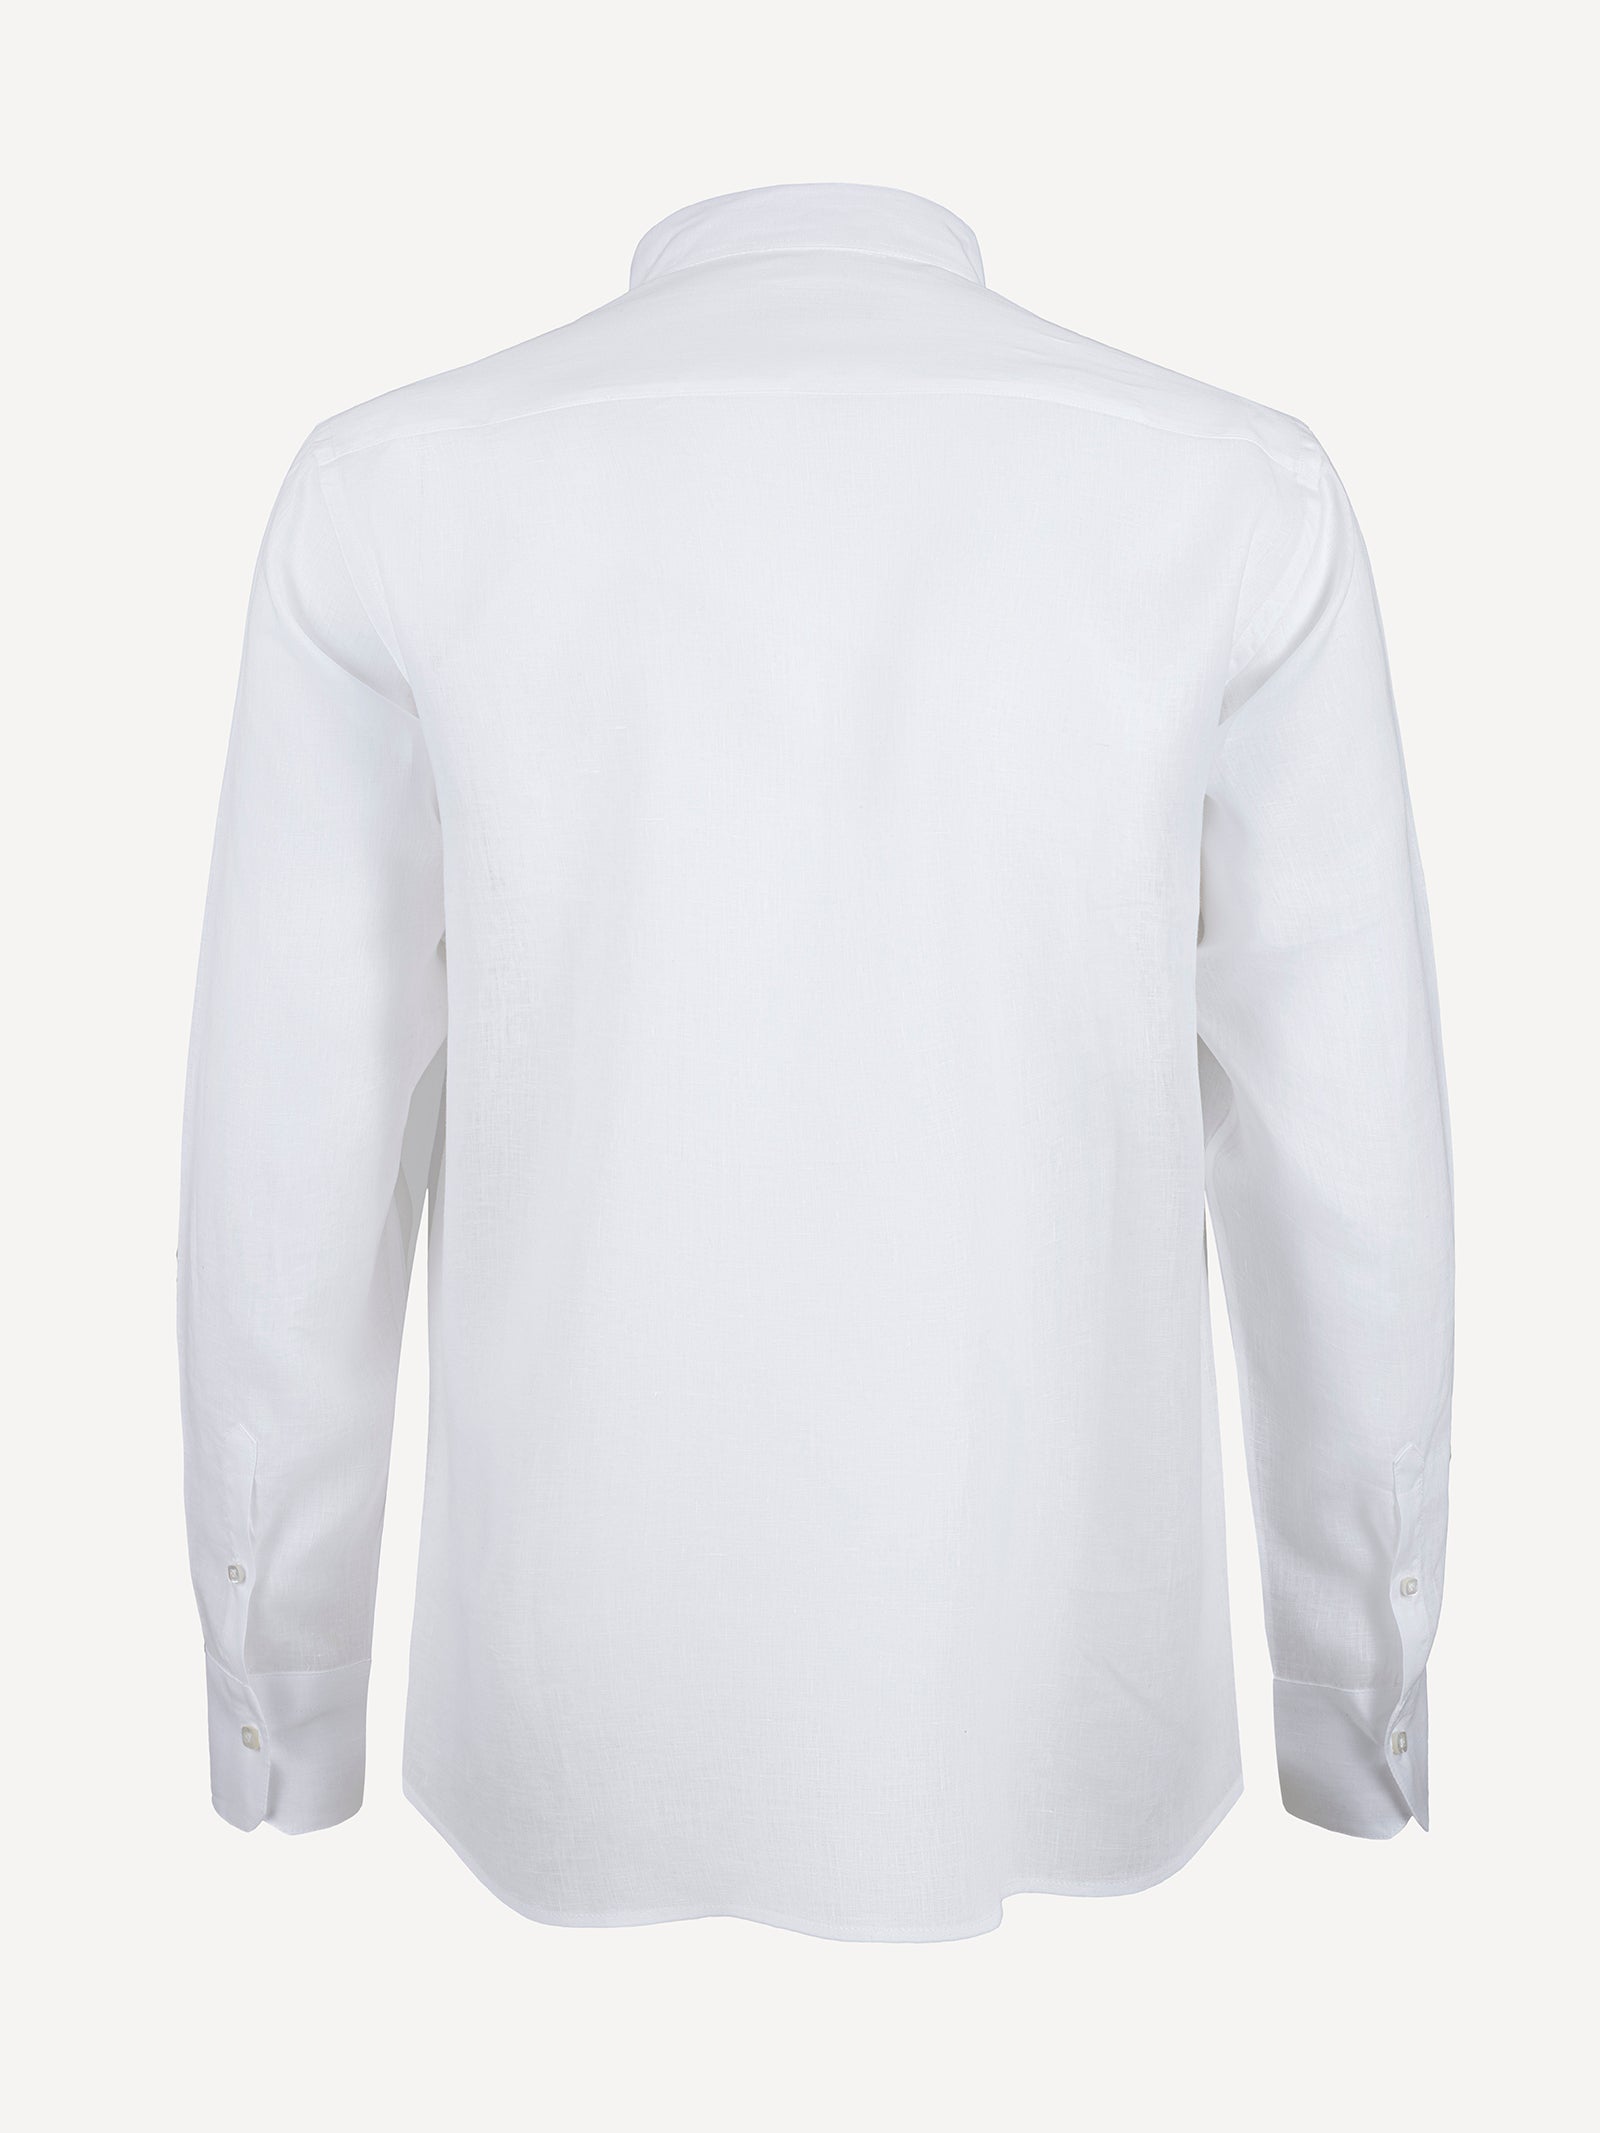 Camicia Miami Plisse back white 100% Capri